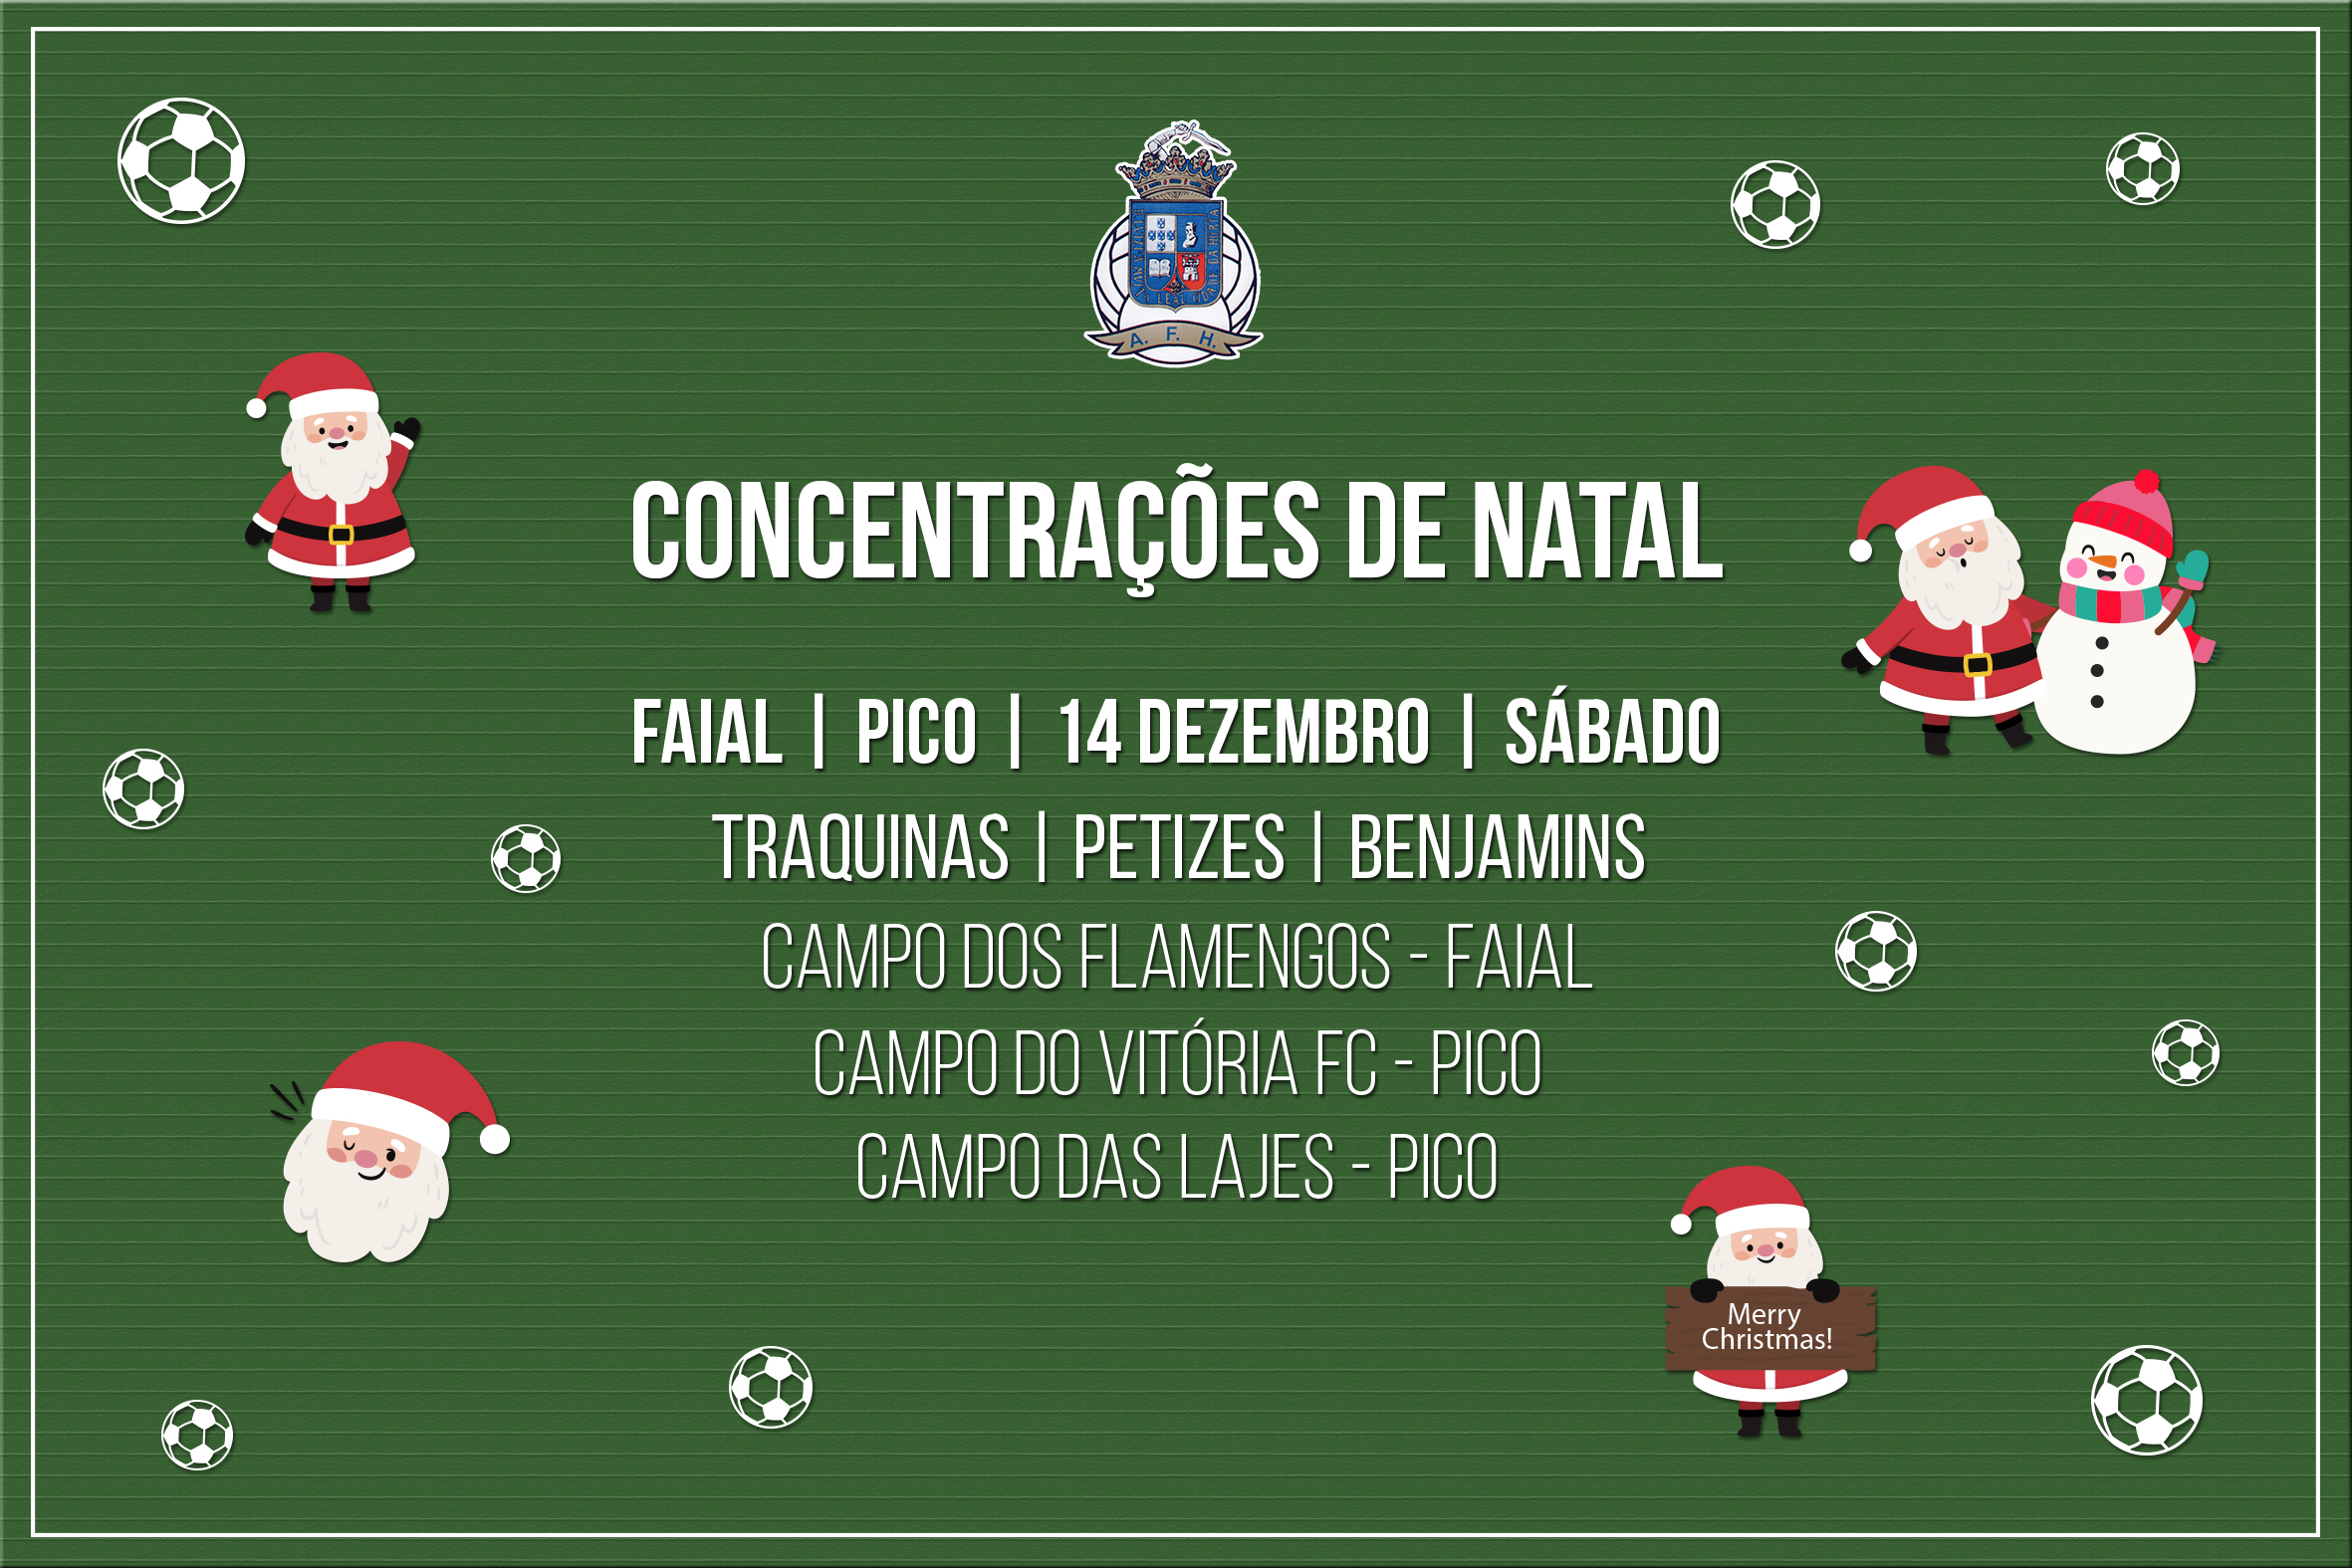 Dia 14 - Concentrações de Natal no Faial e Pico